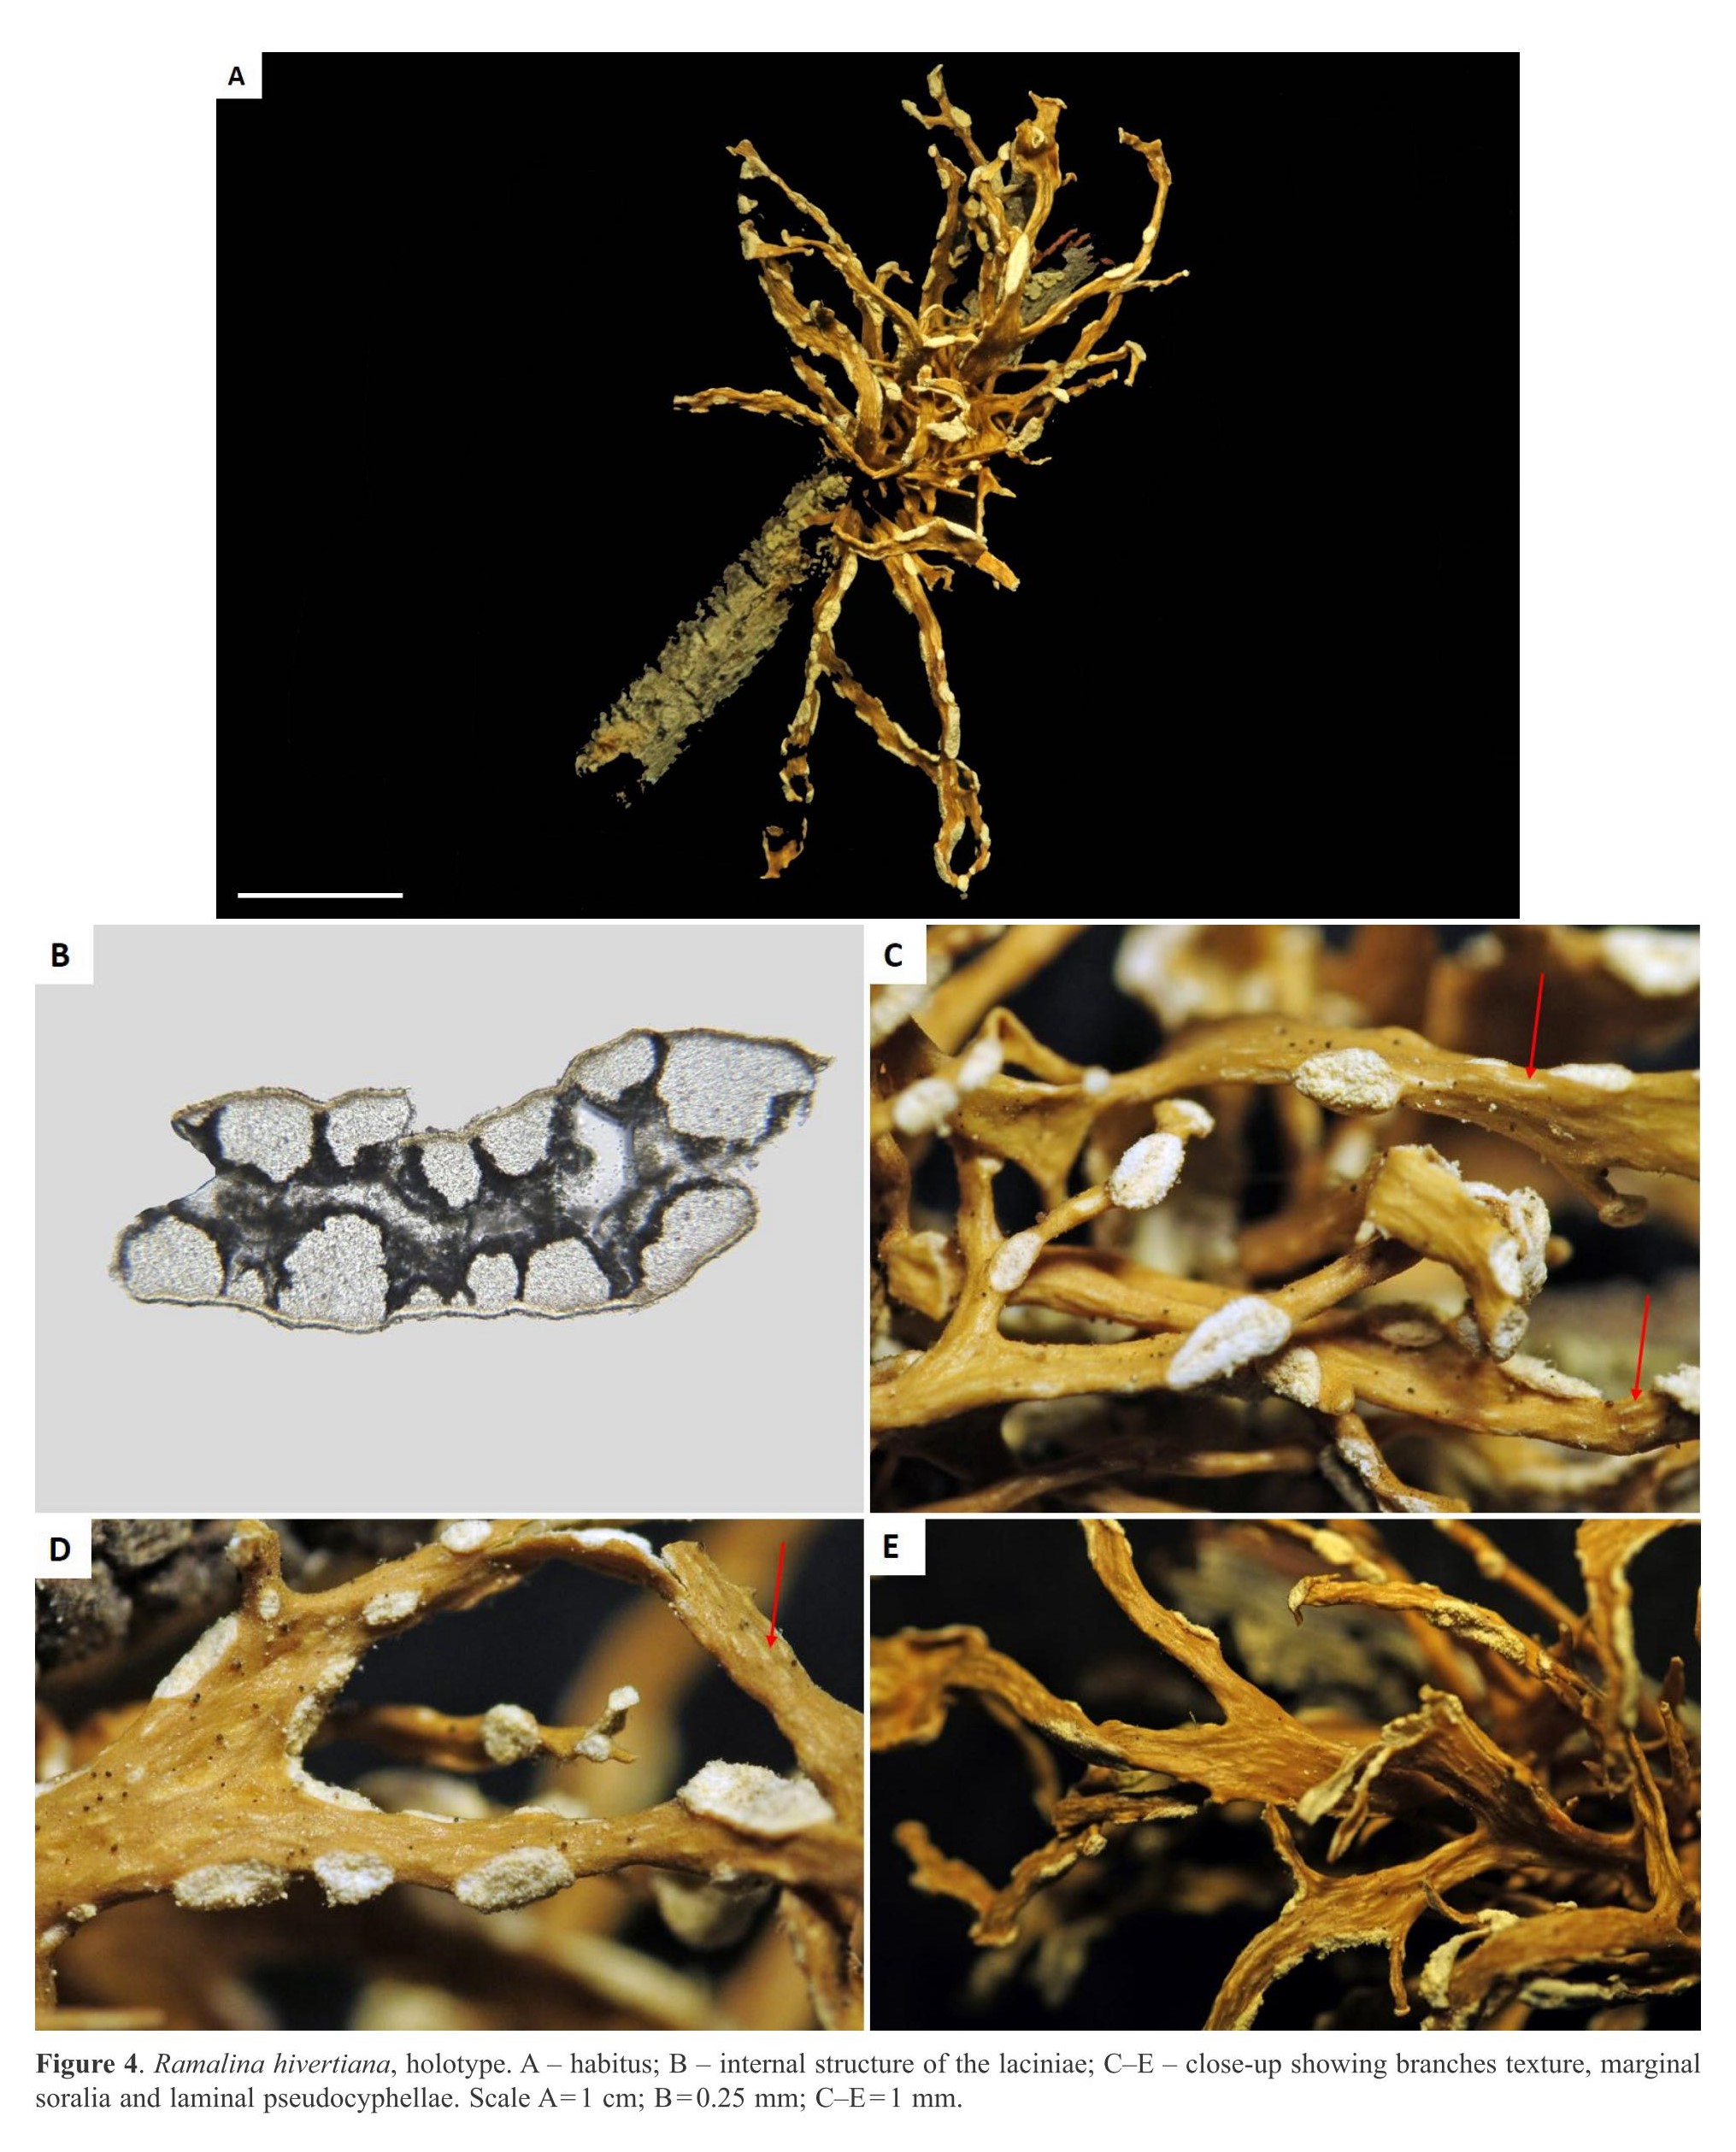 Publication d'articles sur les lichens des îles Eparses : le genre Ramalina (avec description de 3 nouvelles espèces pour la science) et le genre Roccella